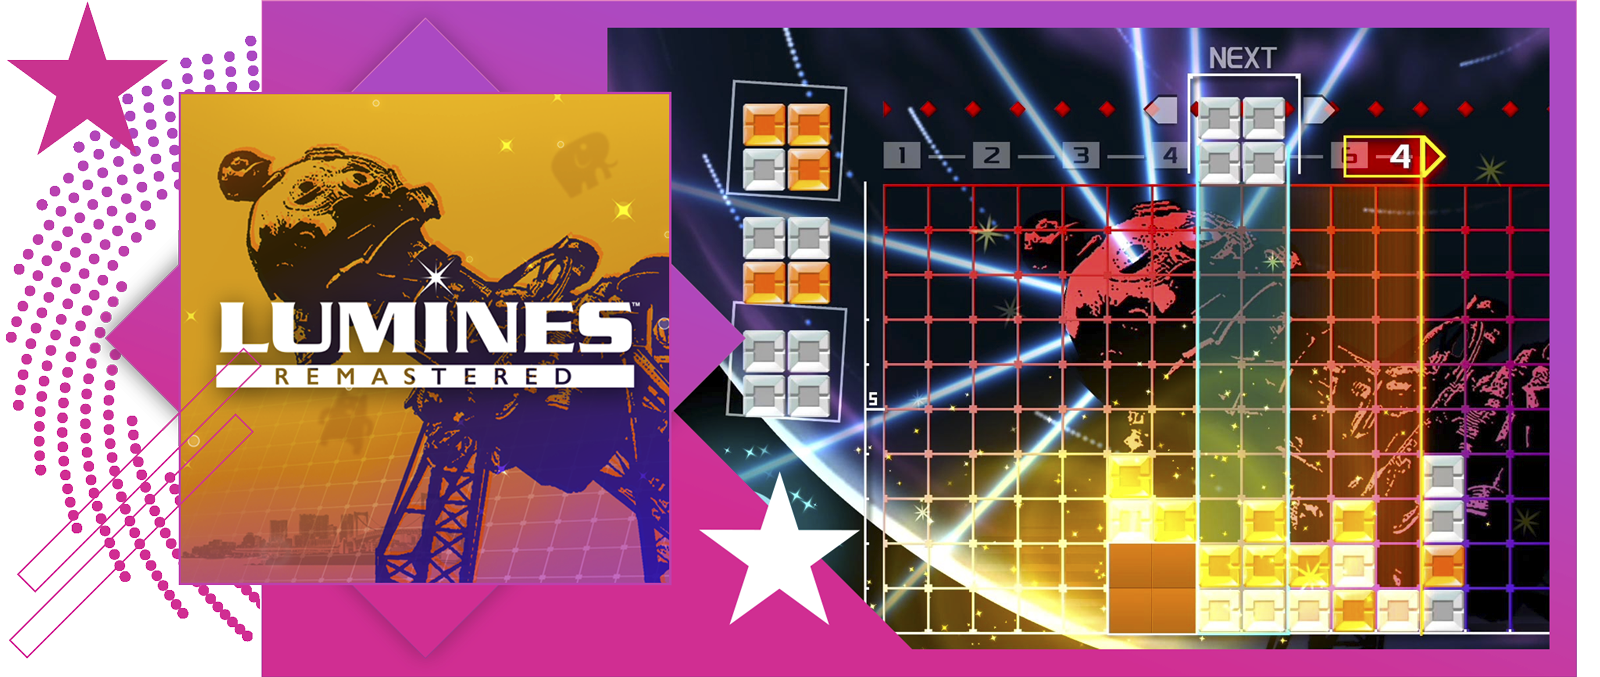 Bedste rytmespil-funktionsbillede med nøglegrafik og gameplay fra Lumines Remastered.